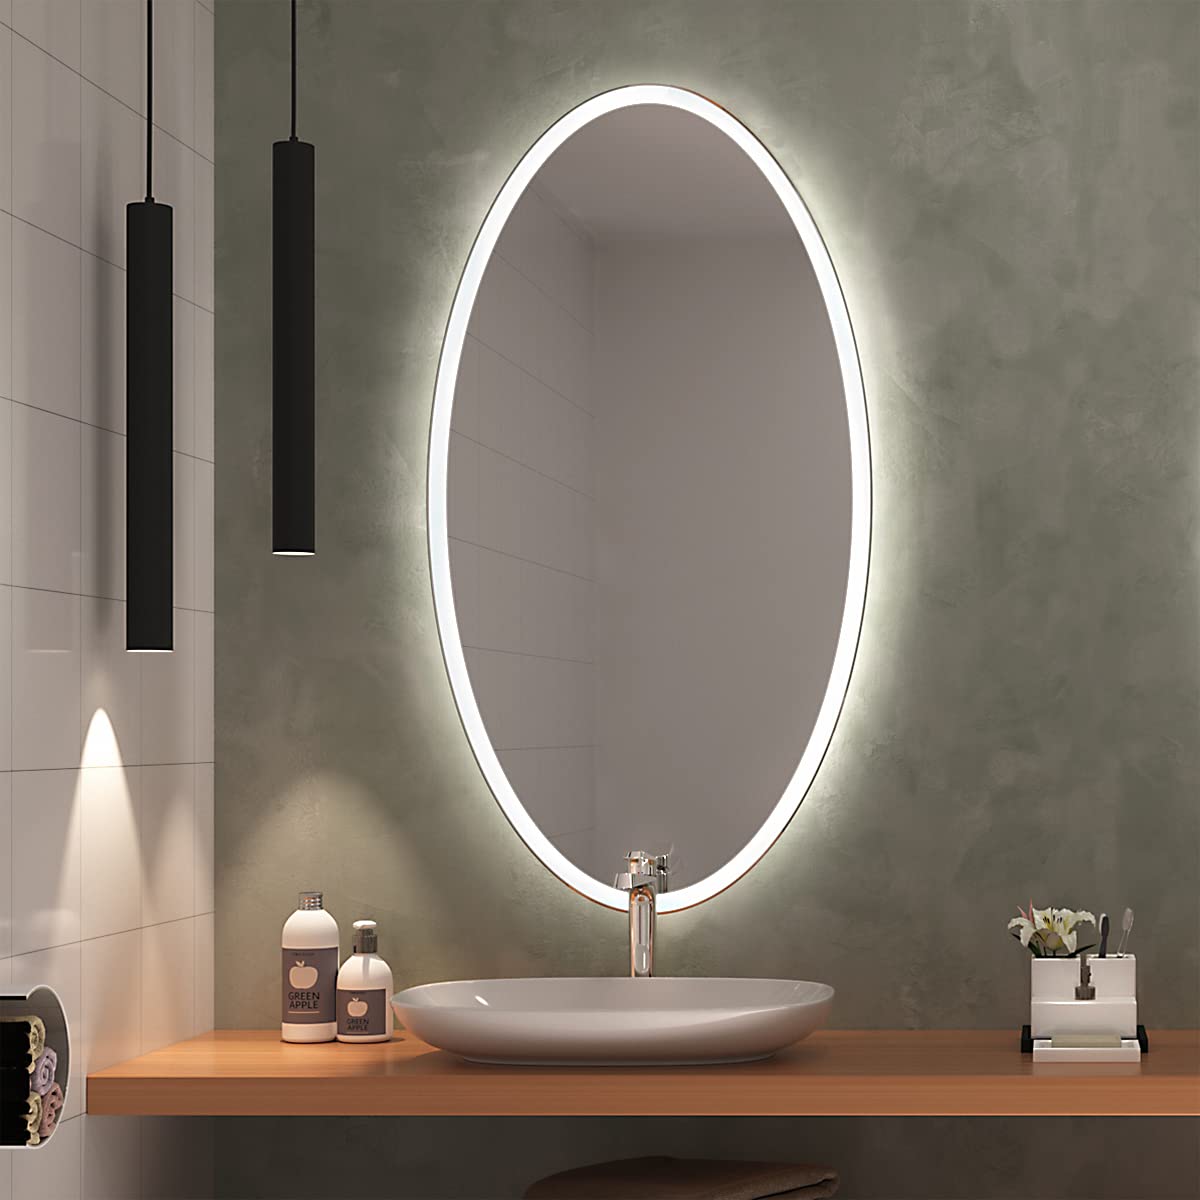 SARAR Elliptischer Wandspiegel mit rundum Beleuchtung ca. 70x90 cm Sete EL30 Badspiegel Spiegel mit Beleuchtung Badezimmerspiegel